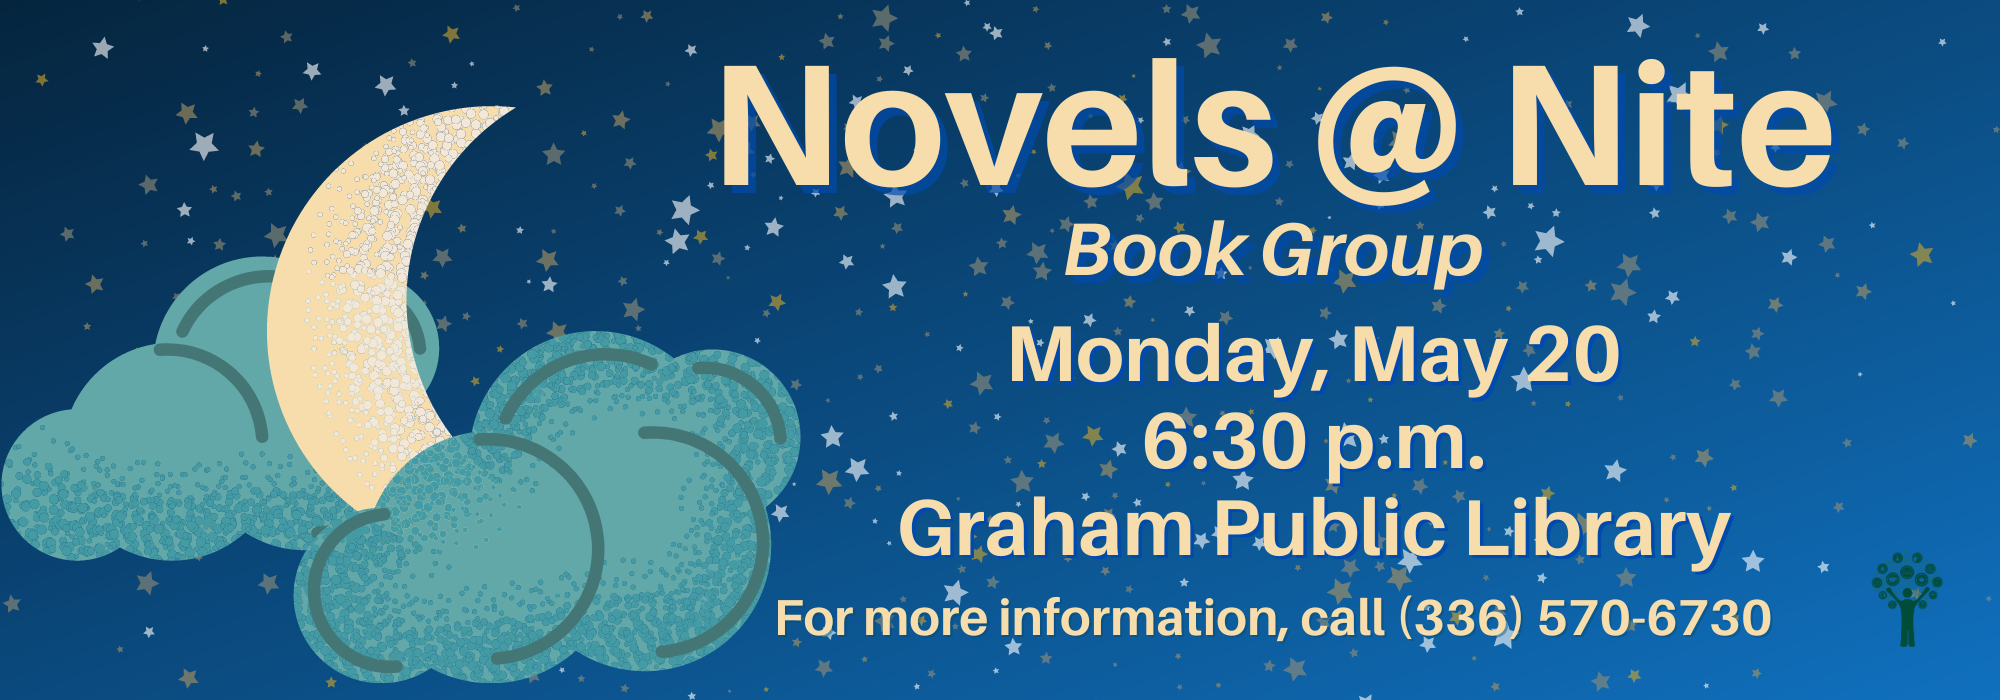 5.20 at 630 pm - Novels @ Nite at Graham